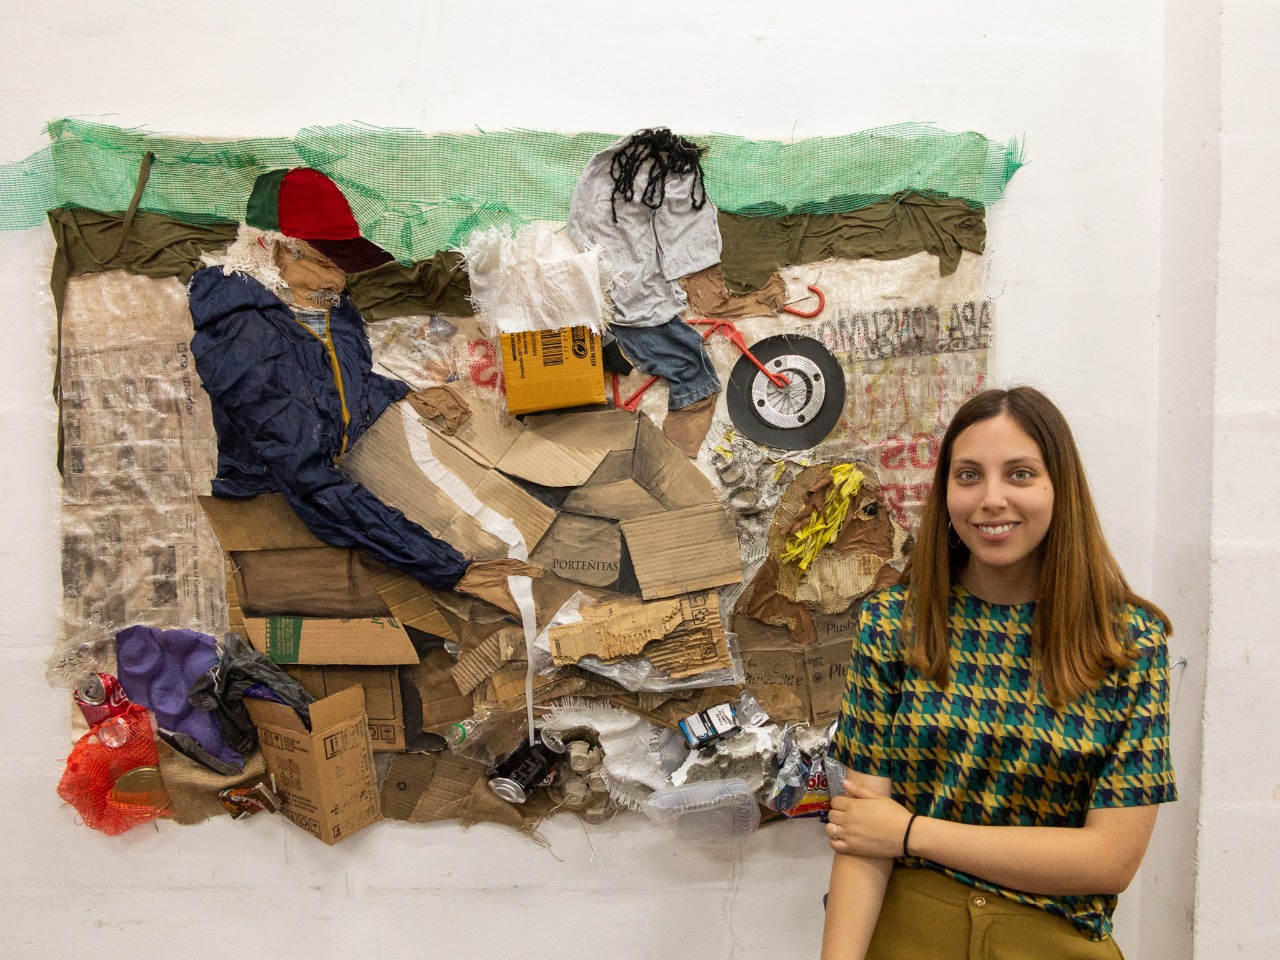 La artista Ana Laura Badía junto a una de las obras de la exposición "Recolector taciturno".